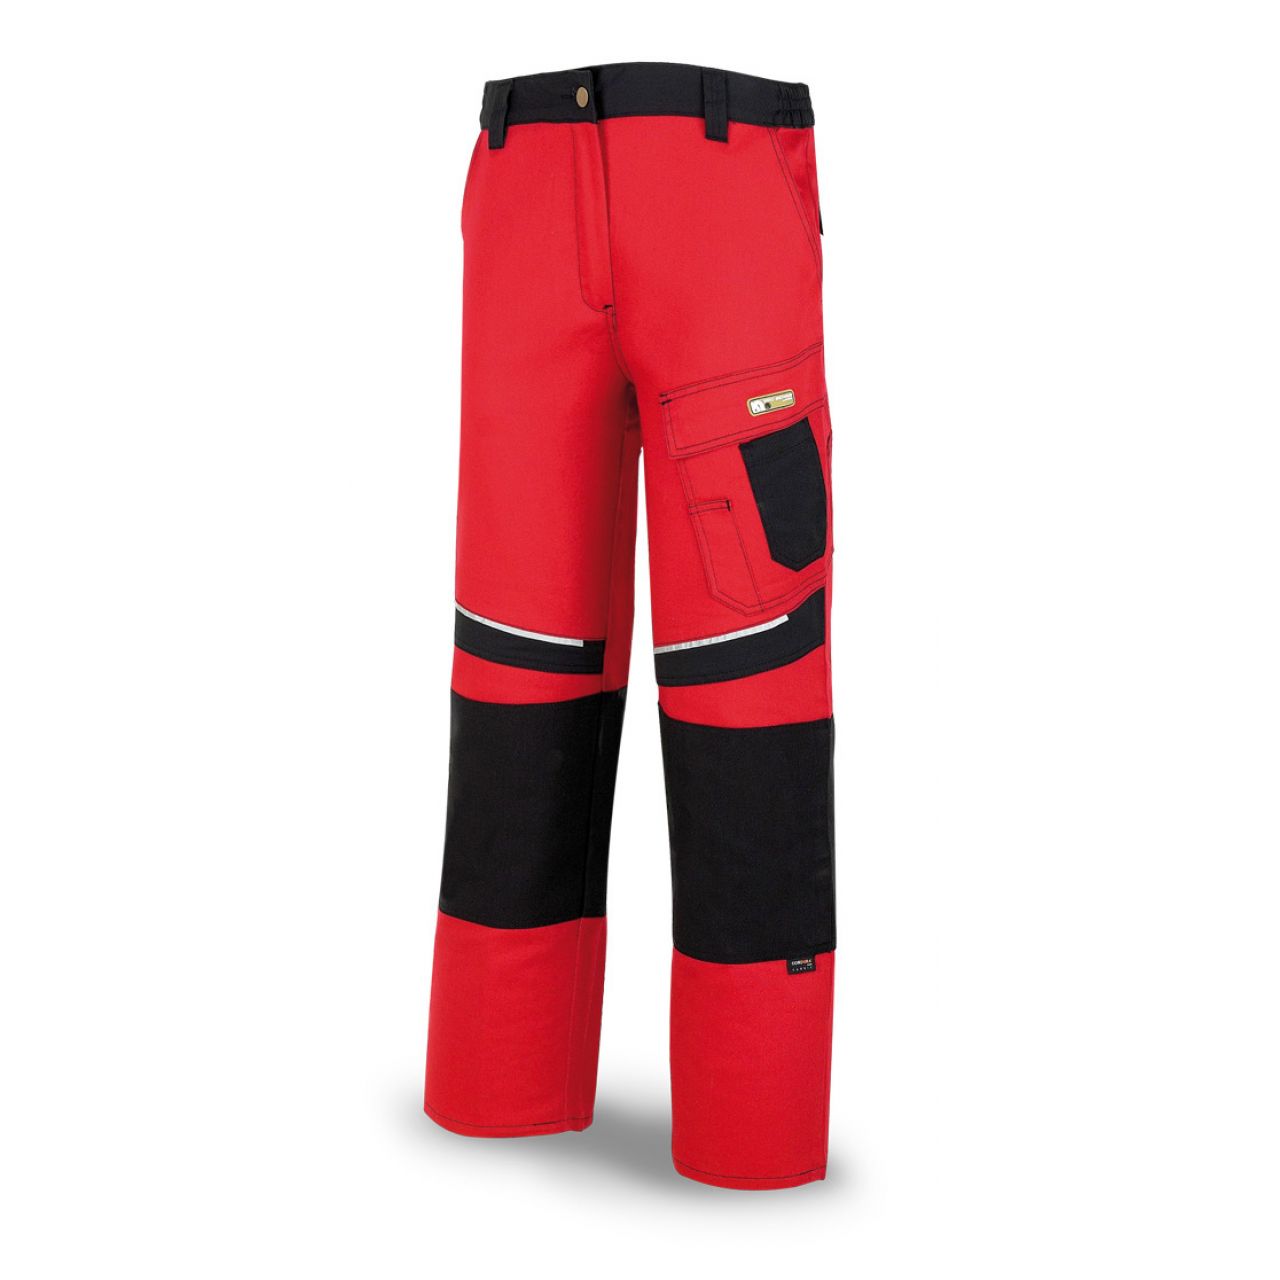 588PCRN Pantalón CANVAS rojo/negro poliéster/algodón 245 g. Multibolsillos